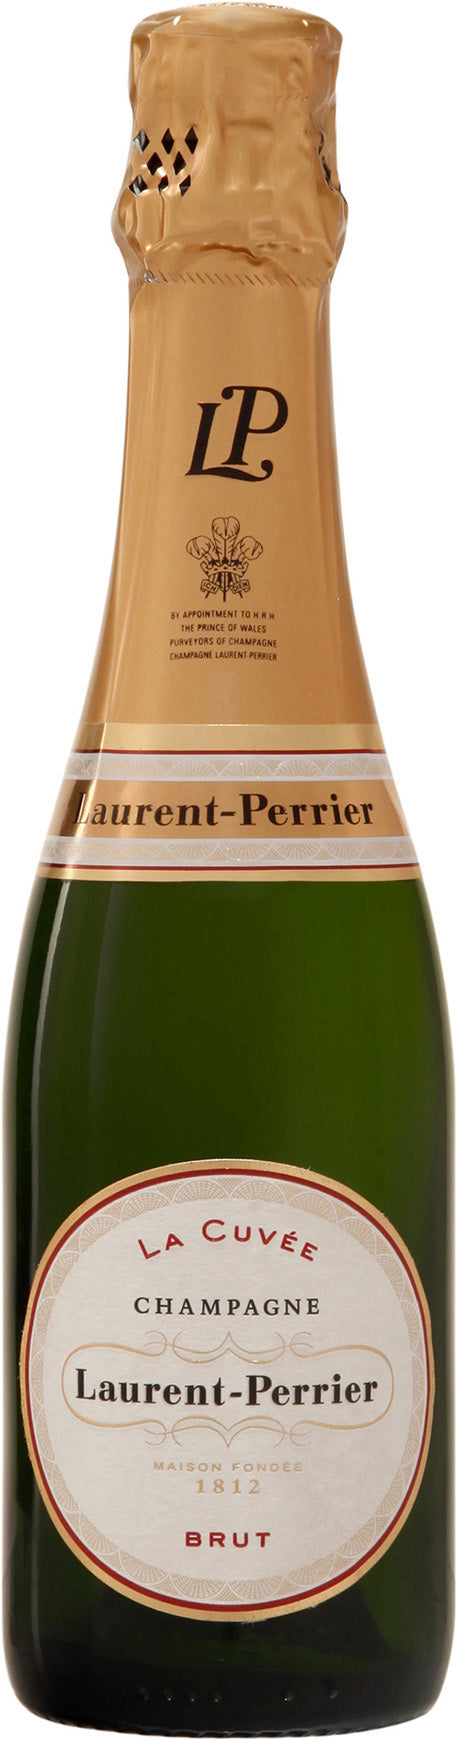 Champagne Brut Laurent-Perrier La Cuvée 0,375 l